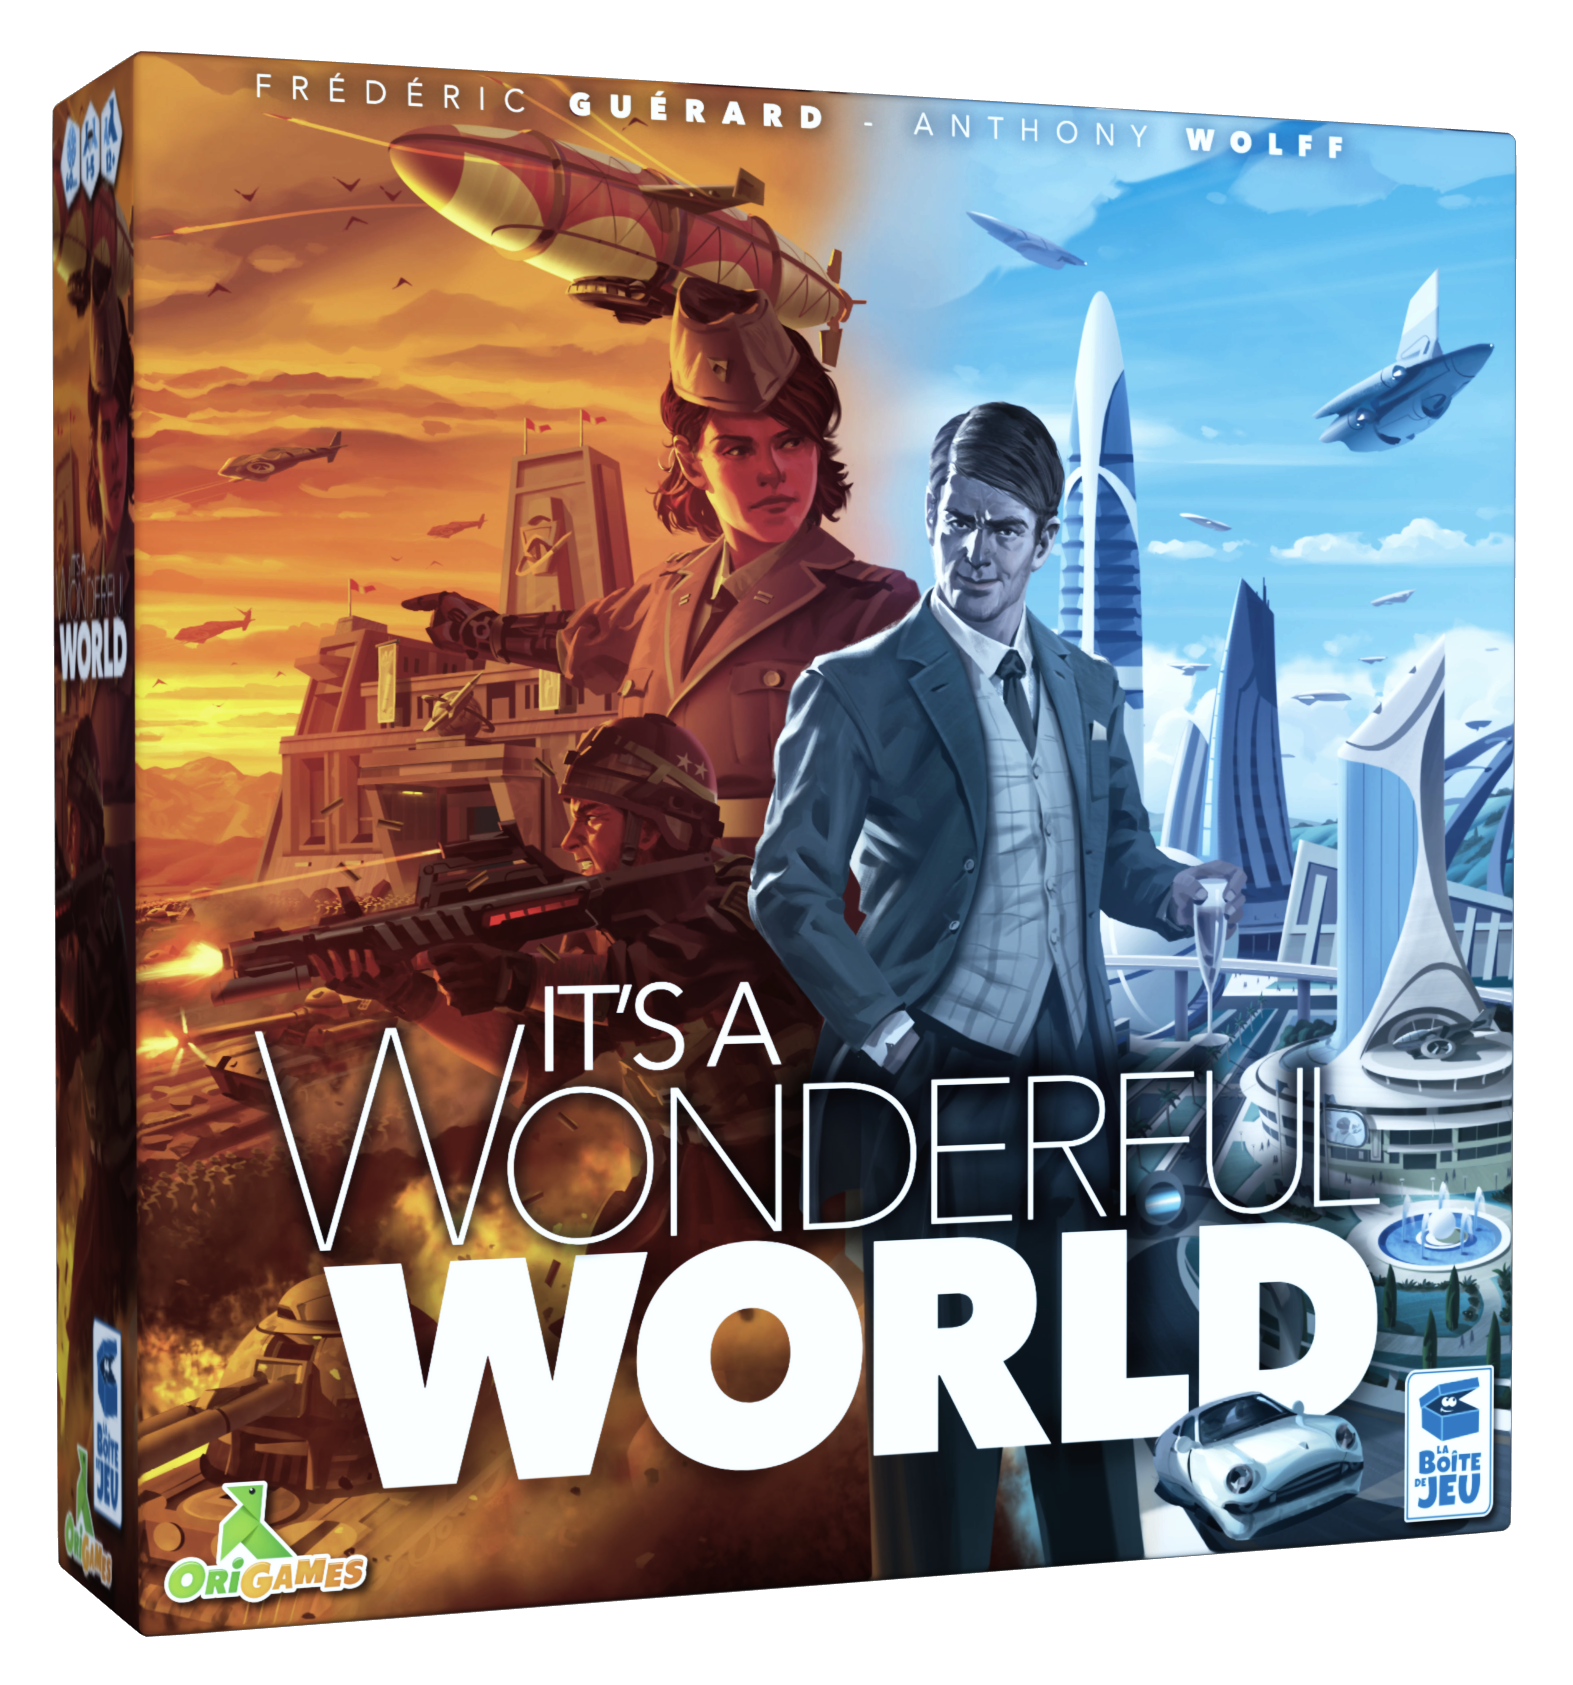 It's Wonderful World jeu